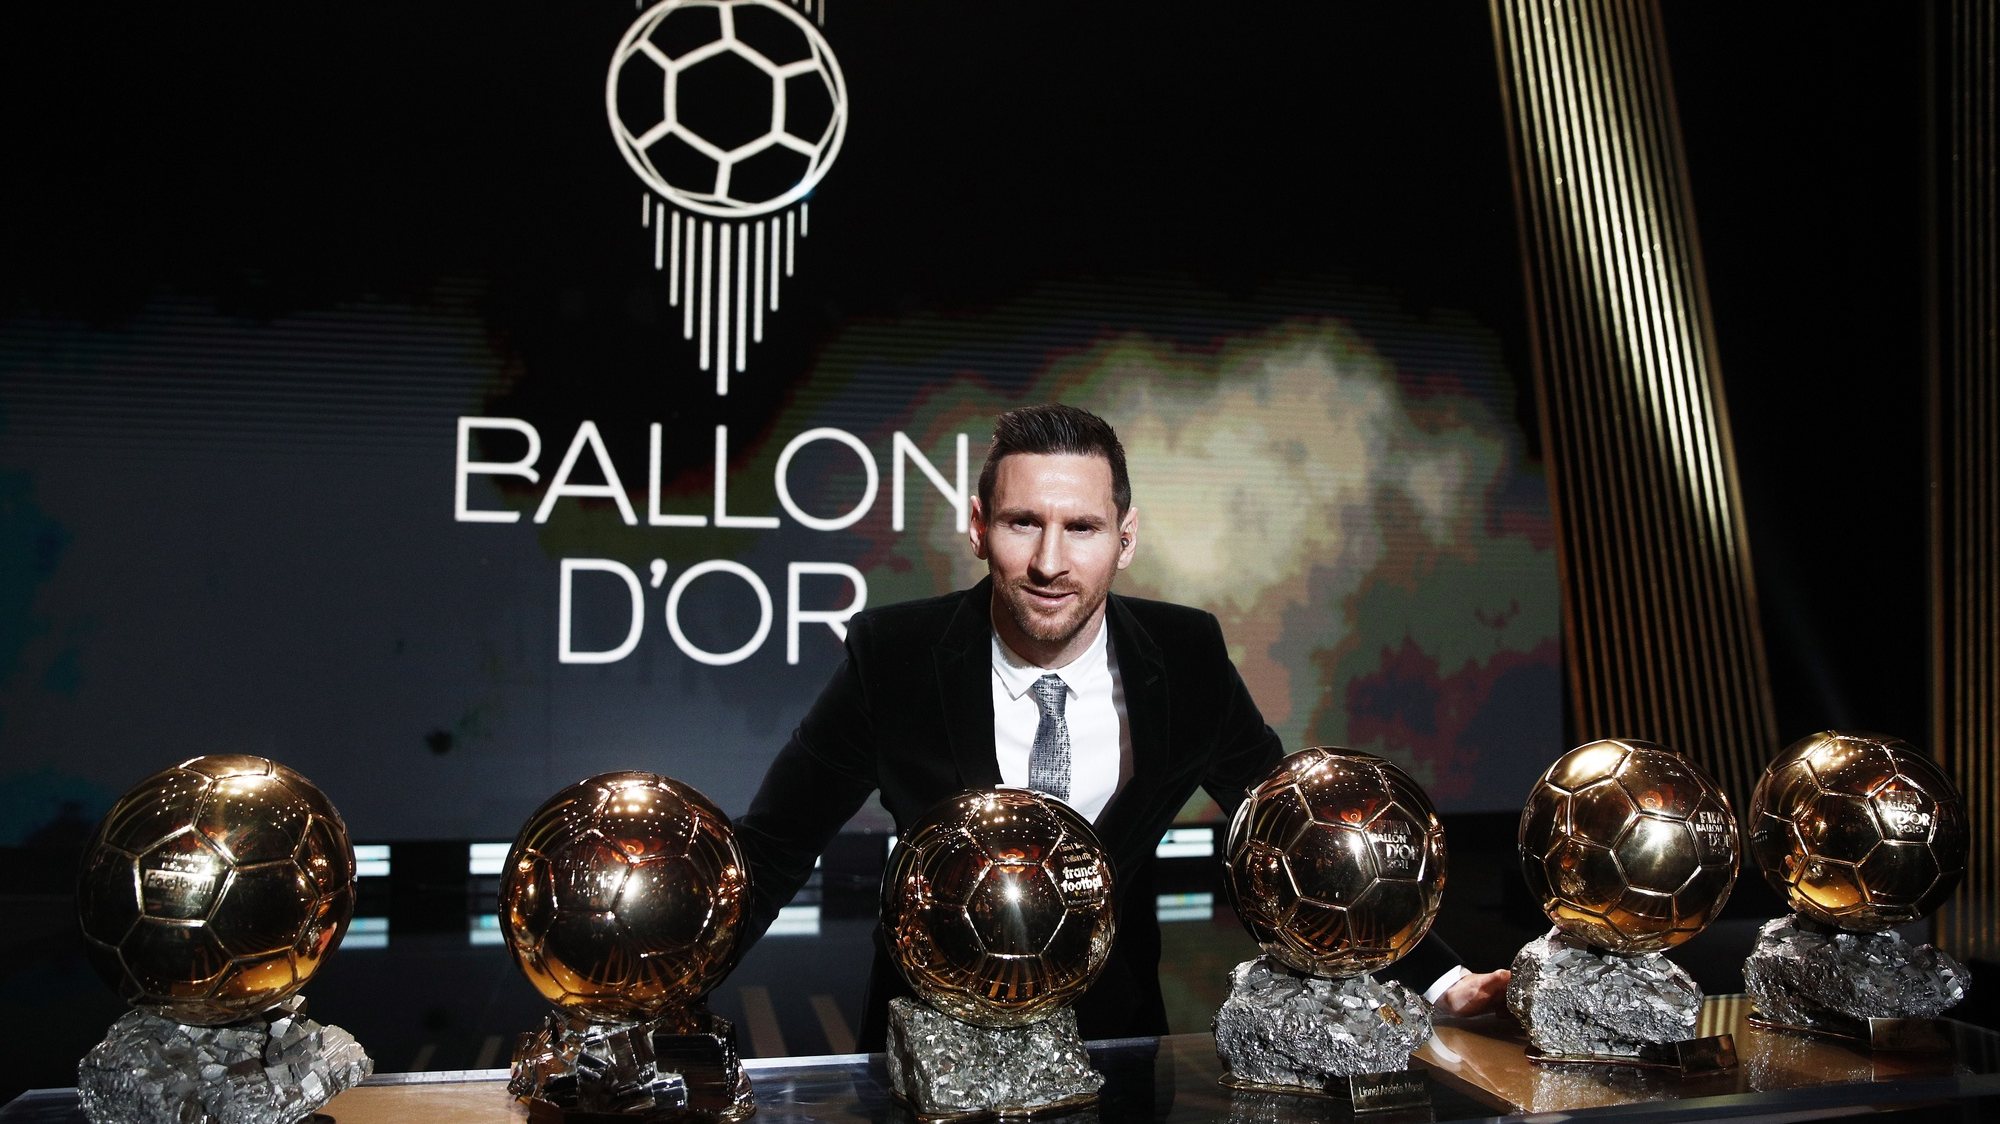 Vencedor de seis Bolas de Ouro, Lionel Messi